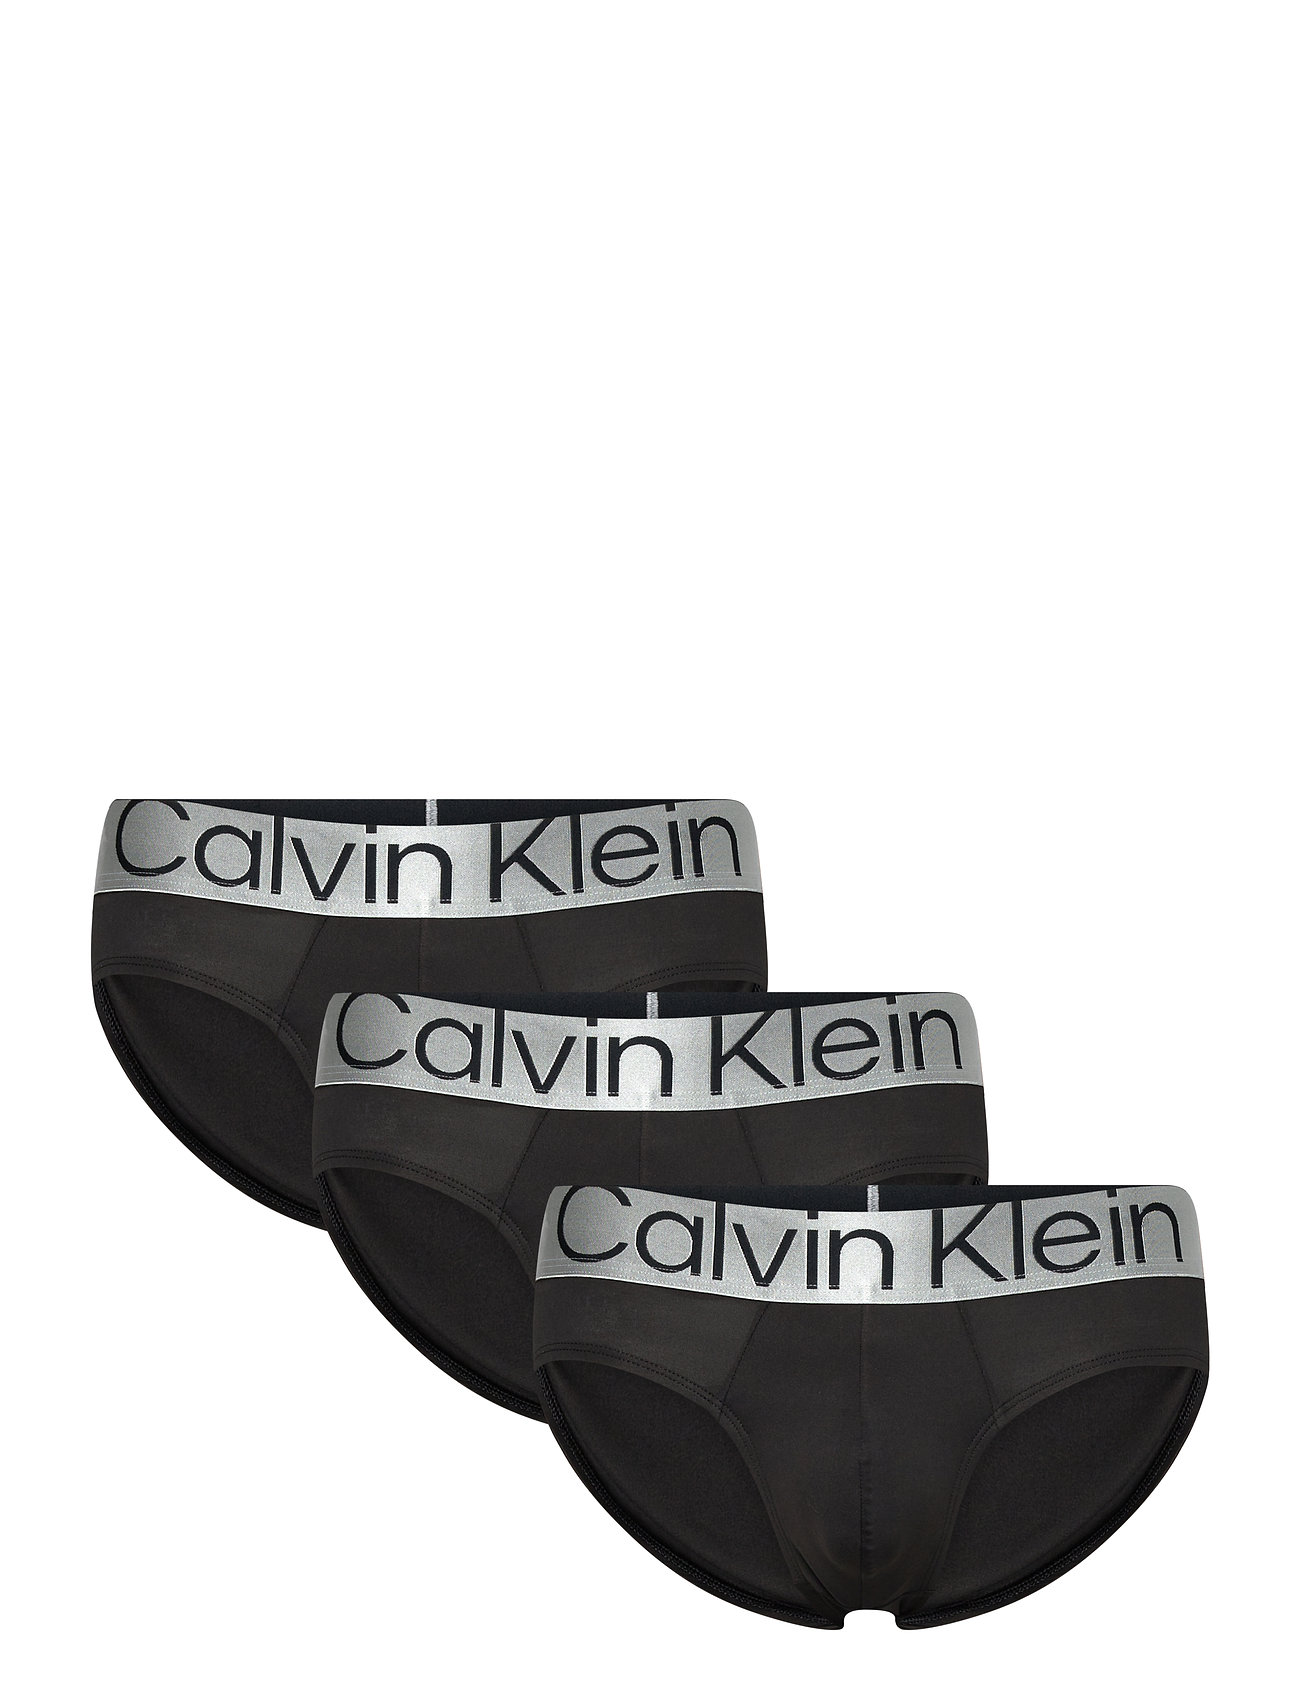 Calvin Klein Men's Hip Briefs : : Fashion